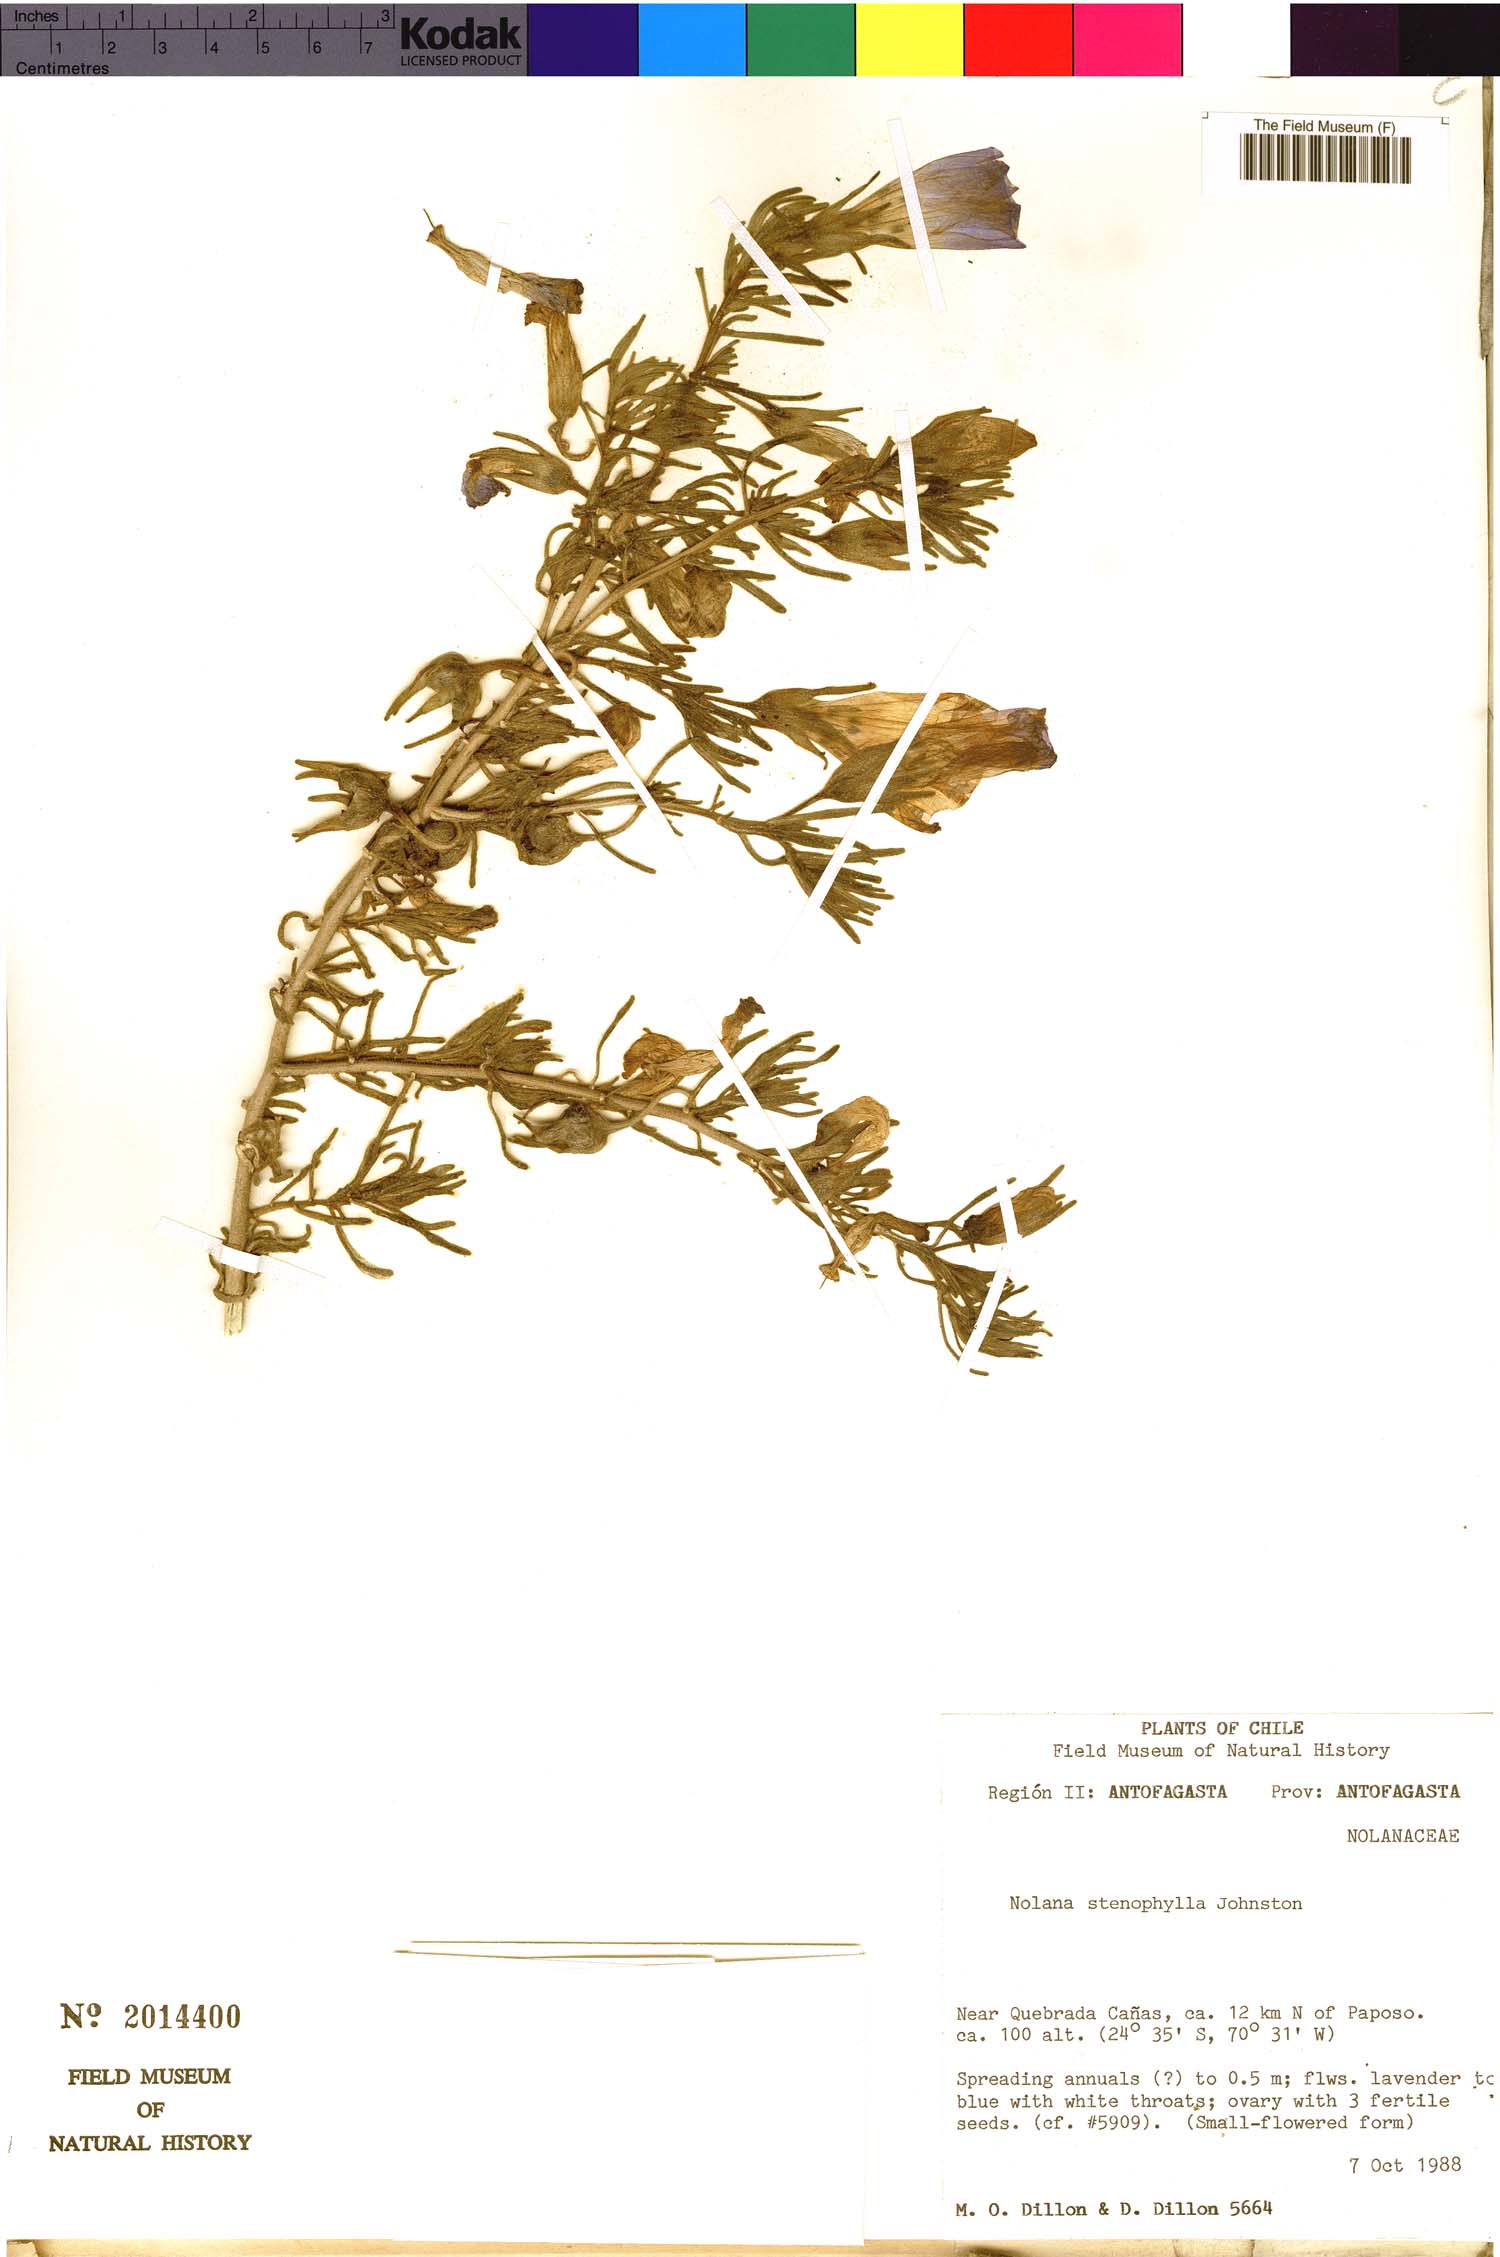 Nolana stenophylla image